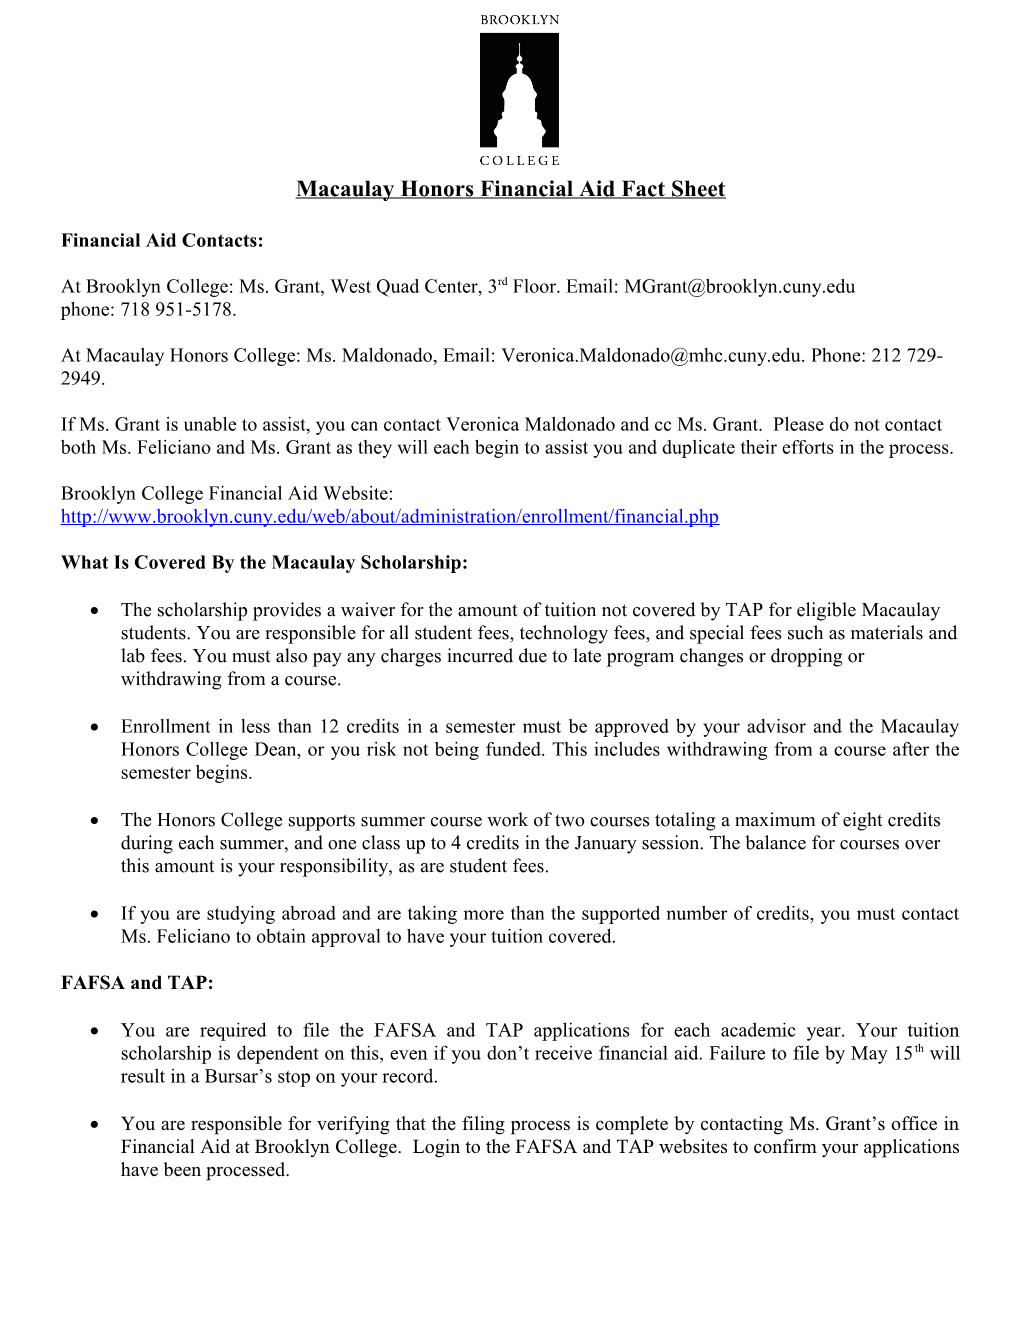 Macaulay Honors Financial Aid Fact Sheet